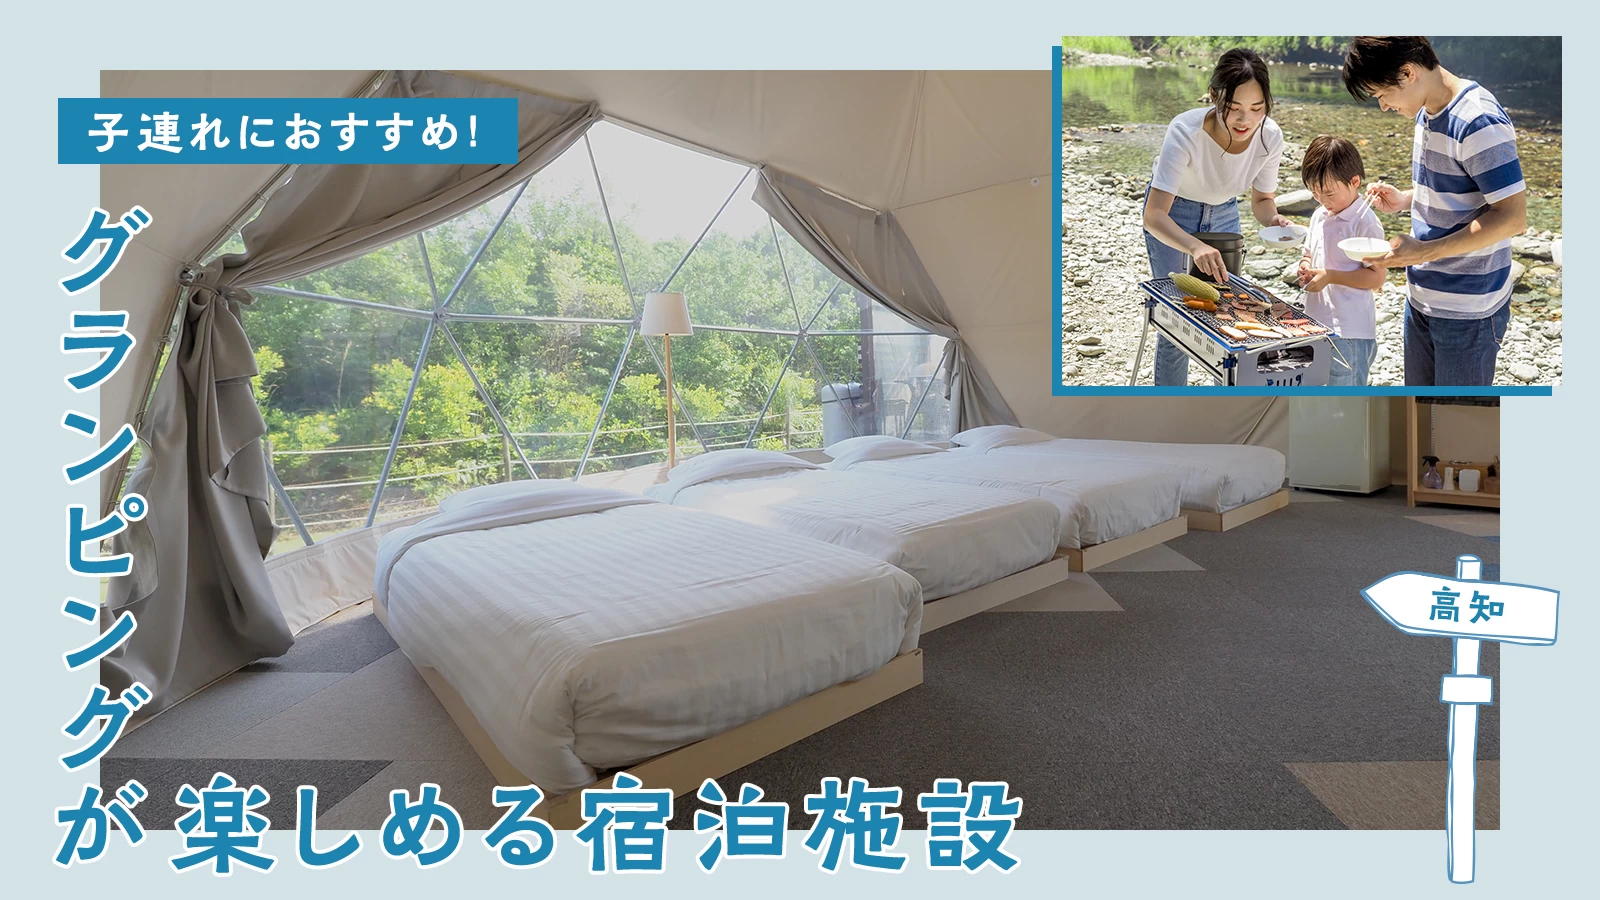 【四国・高知】子連れにおすすめのグランピングが楽しめる宿泊施設3選